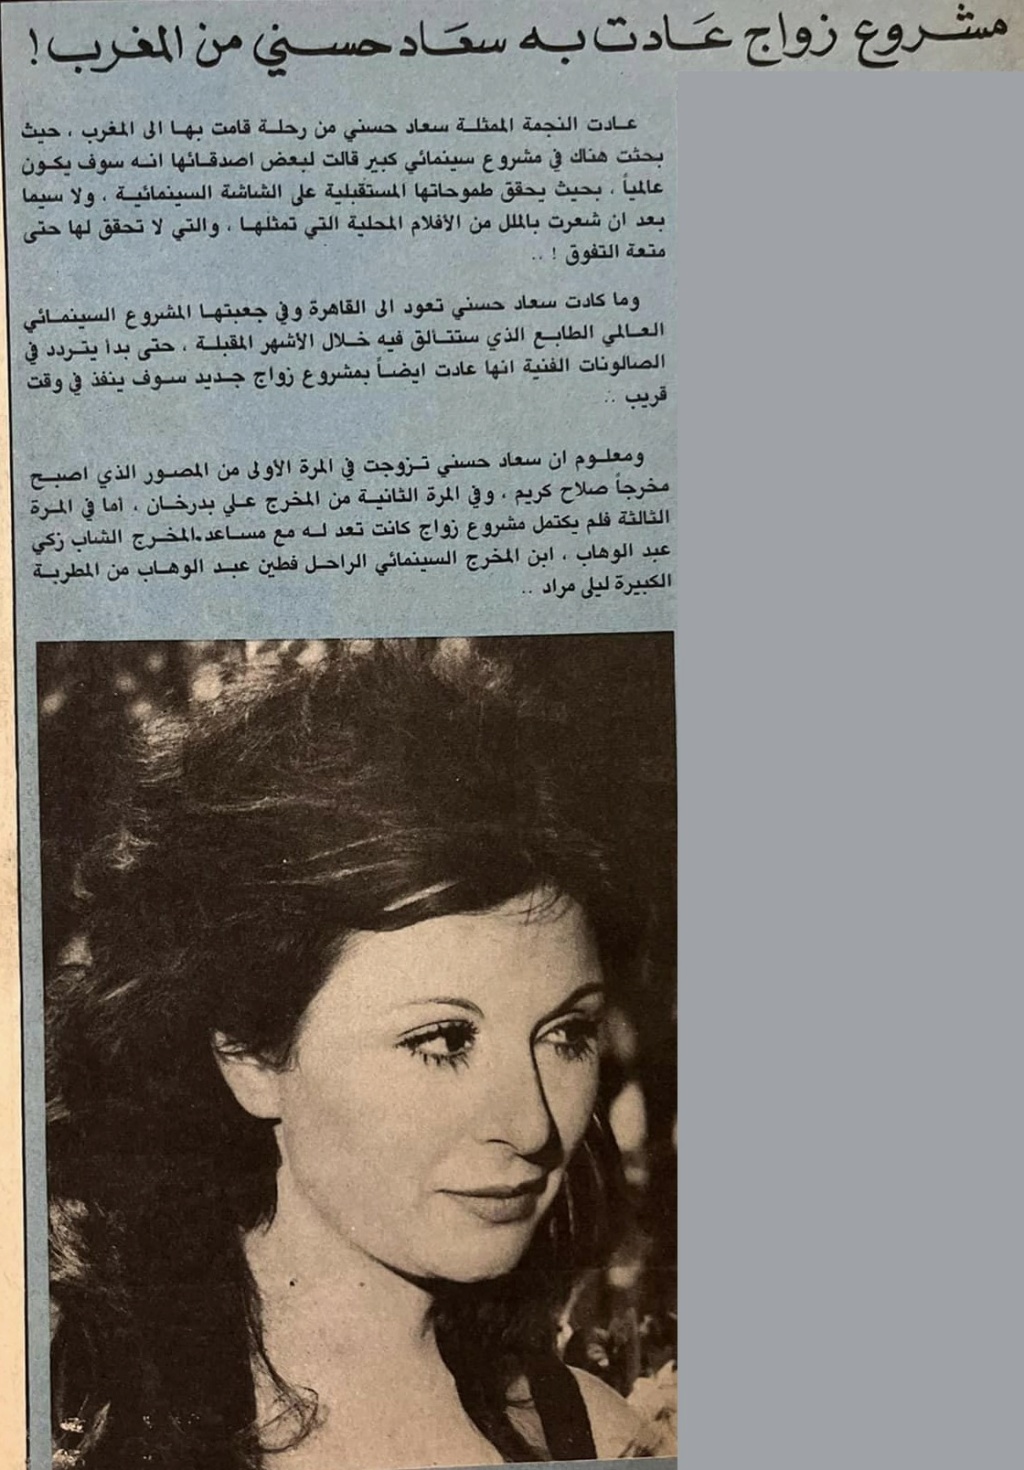 حسني - خبر صحفي : مشروع زواج عادت به سعاد حسني من المغرب ! 1983 م Ai_iy_10